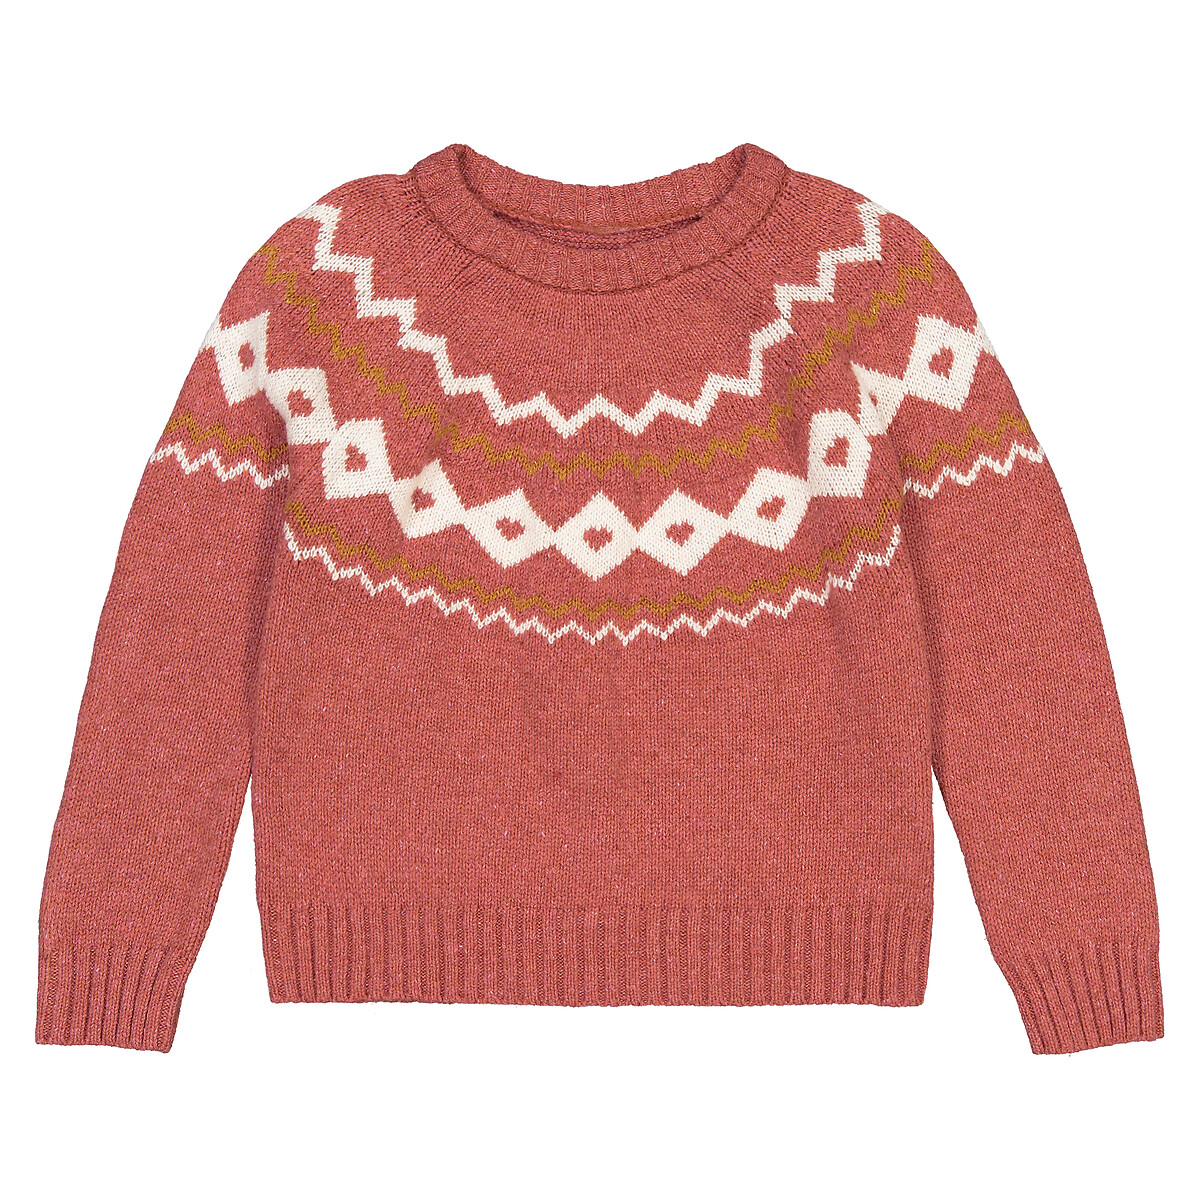 Пуловер LaRedoute С круглым вырезом из тонкого трикотажа жаккард 3-12 лет 5 лет - 108 см розовый, размер 5 лет - 108 см - фото 3